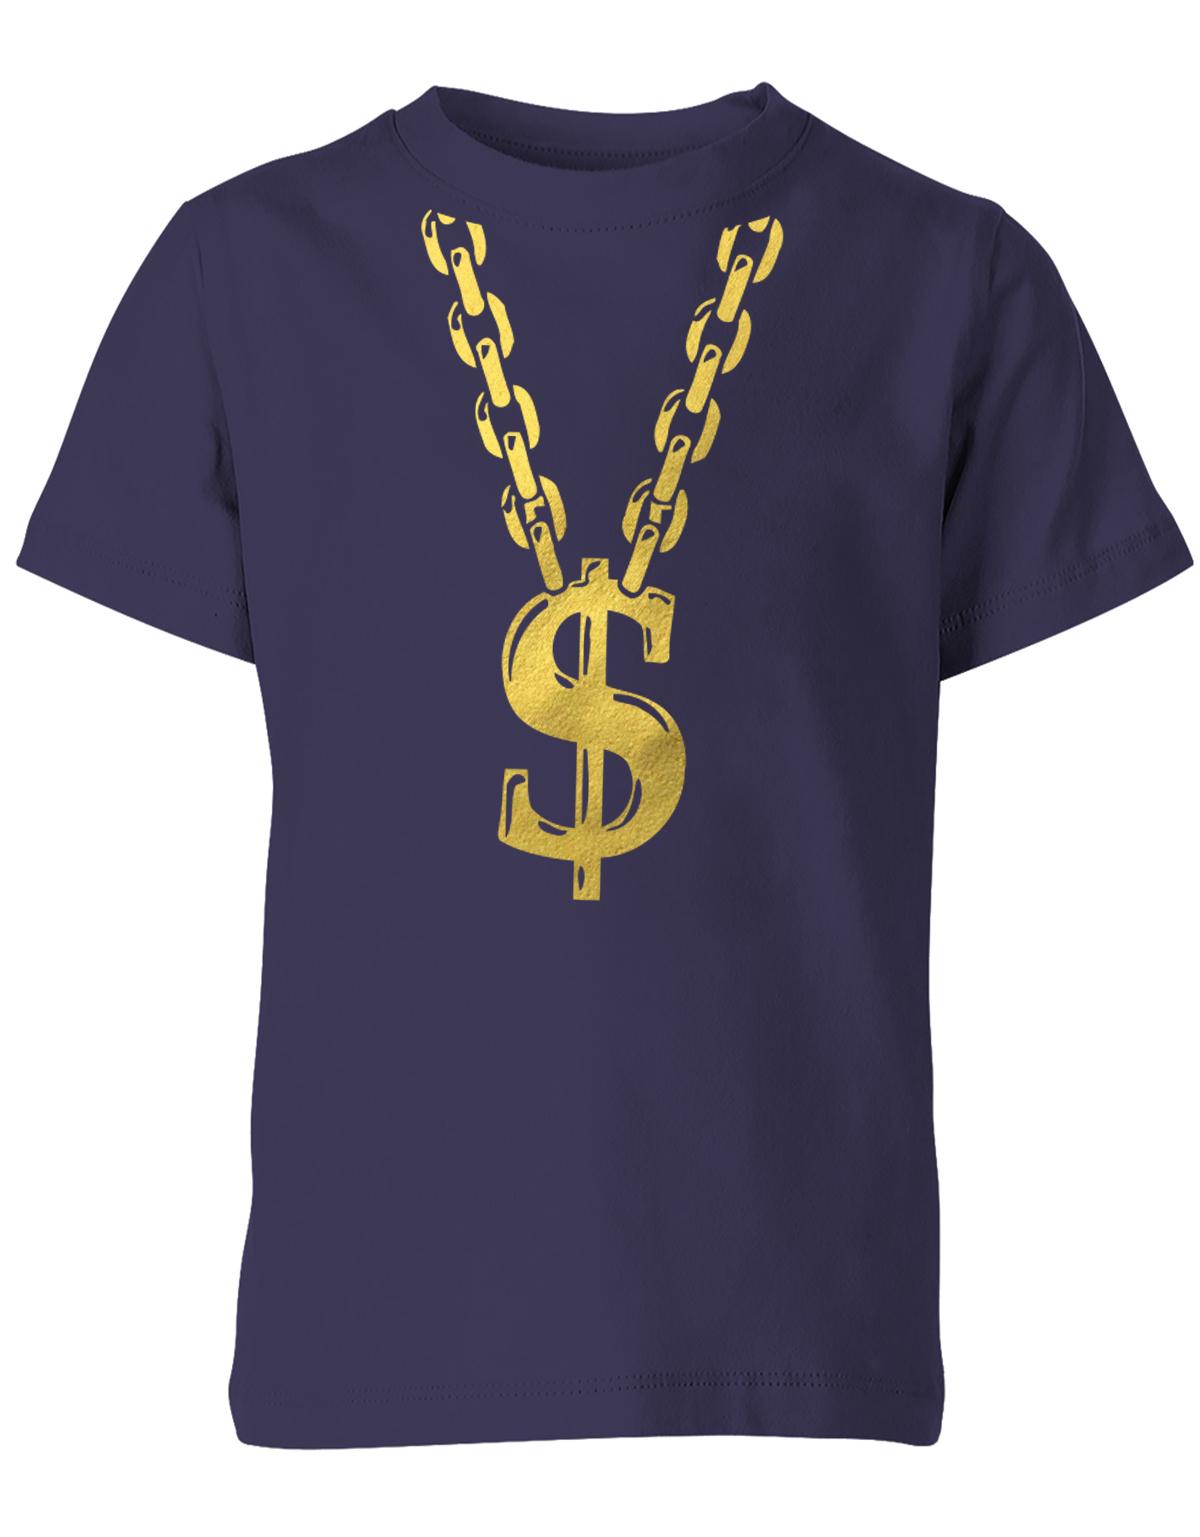 Gangster-Rapper-Goldkette-Kinder-Faschin-Verkleidung-Shirt-Navy